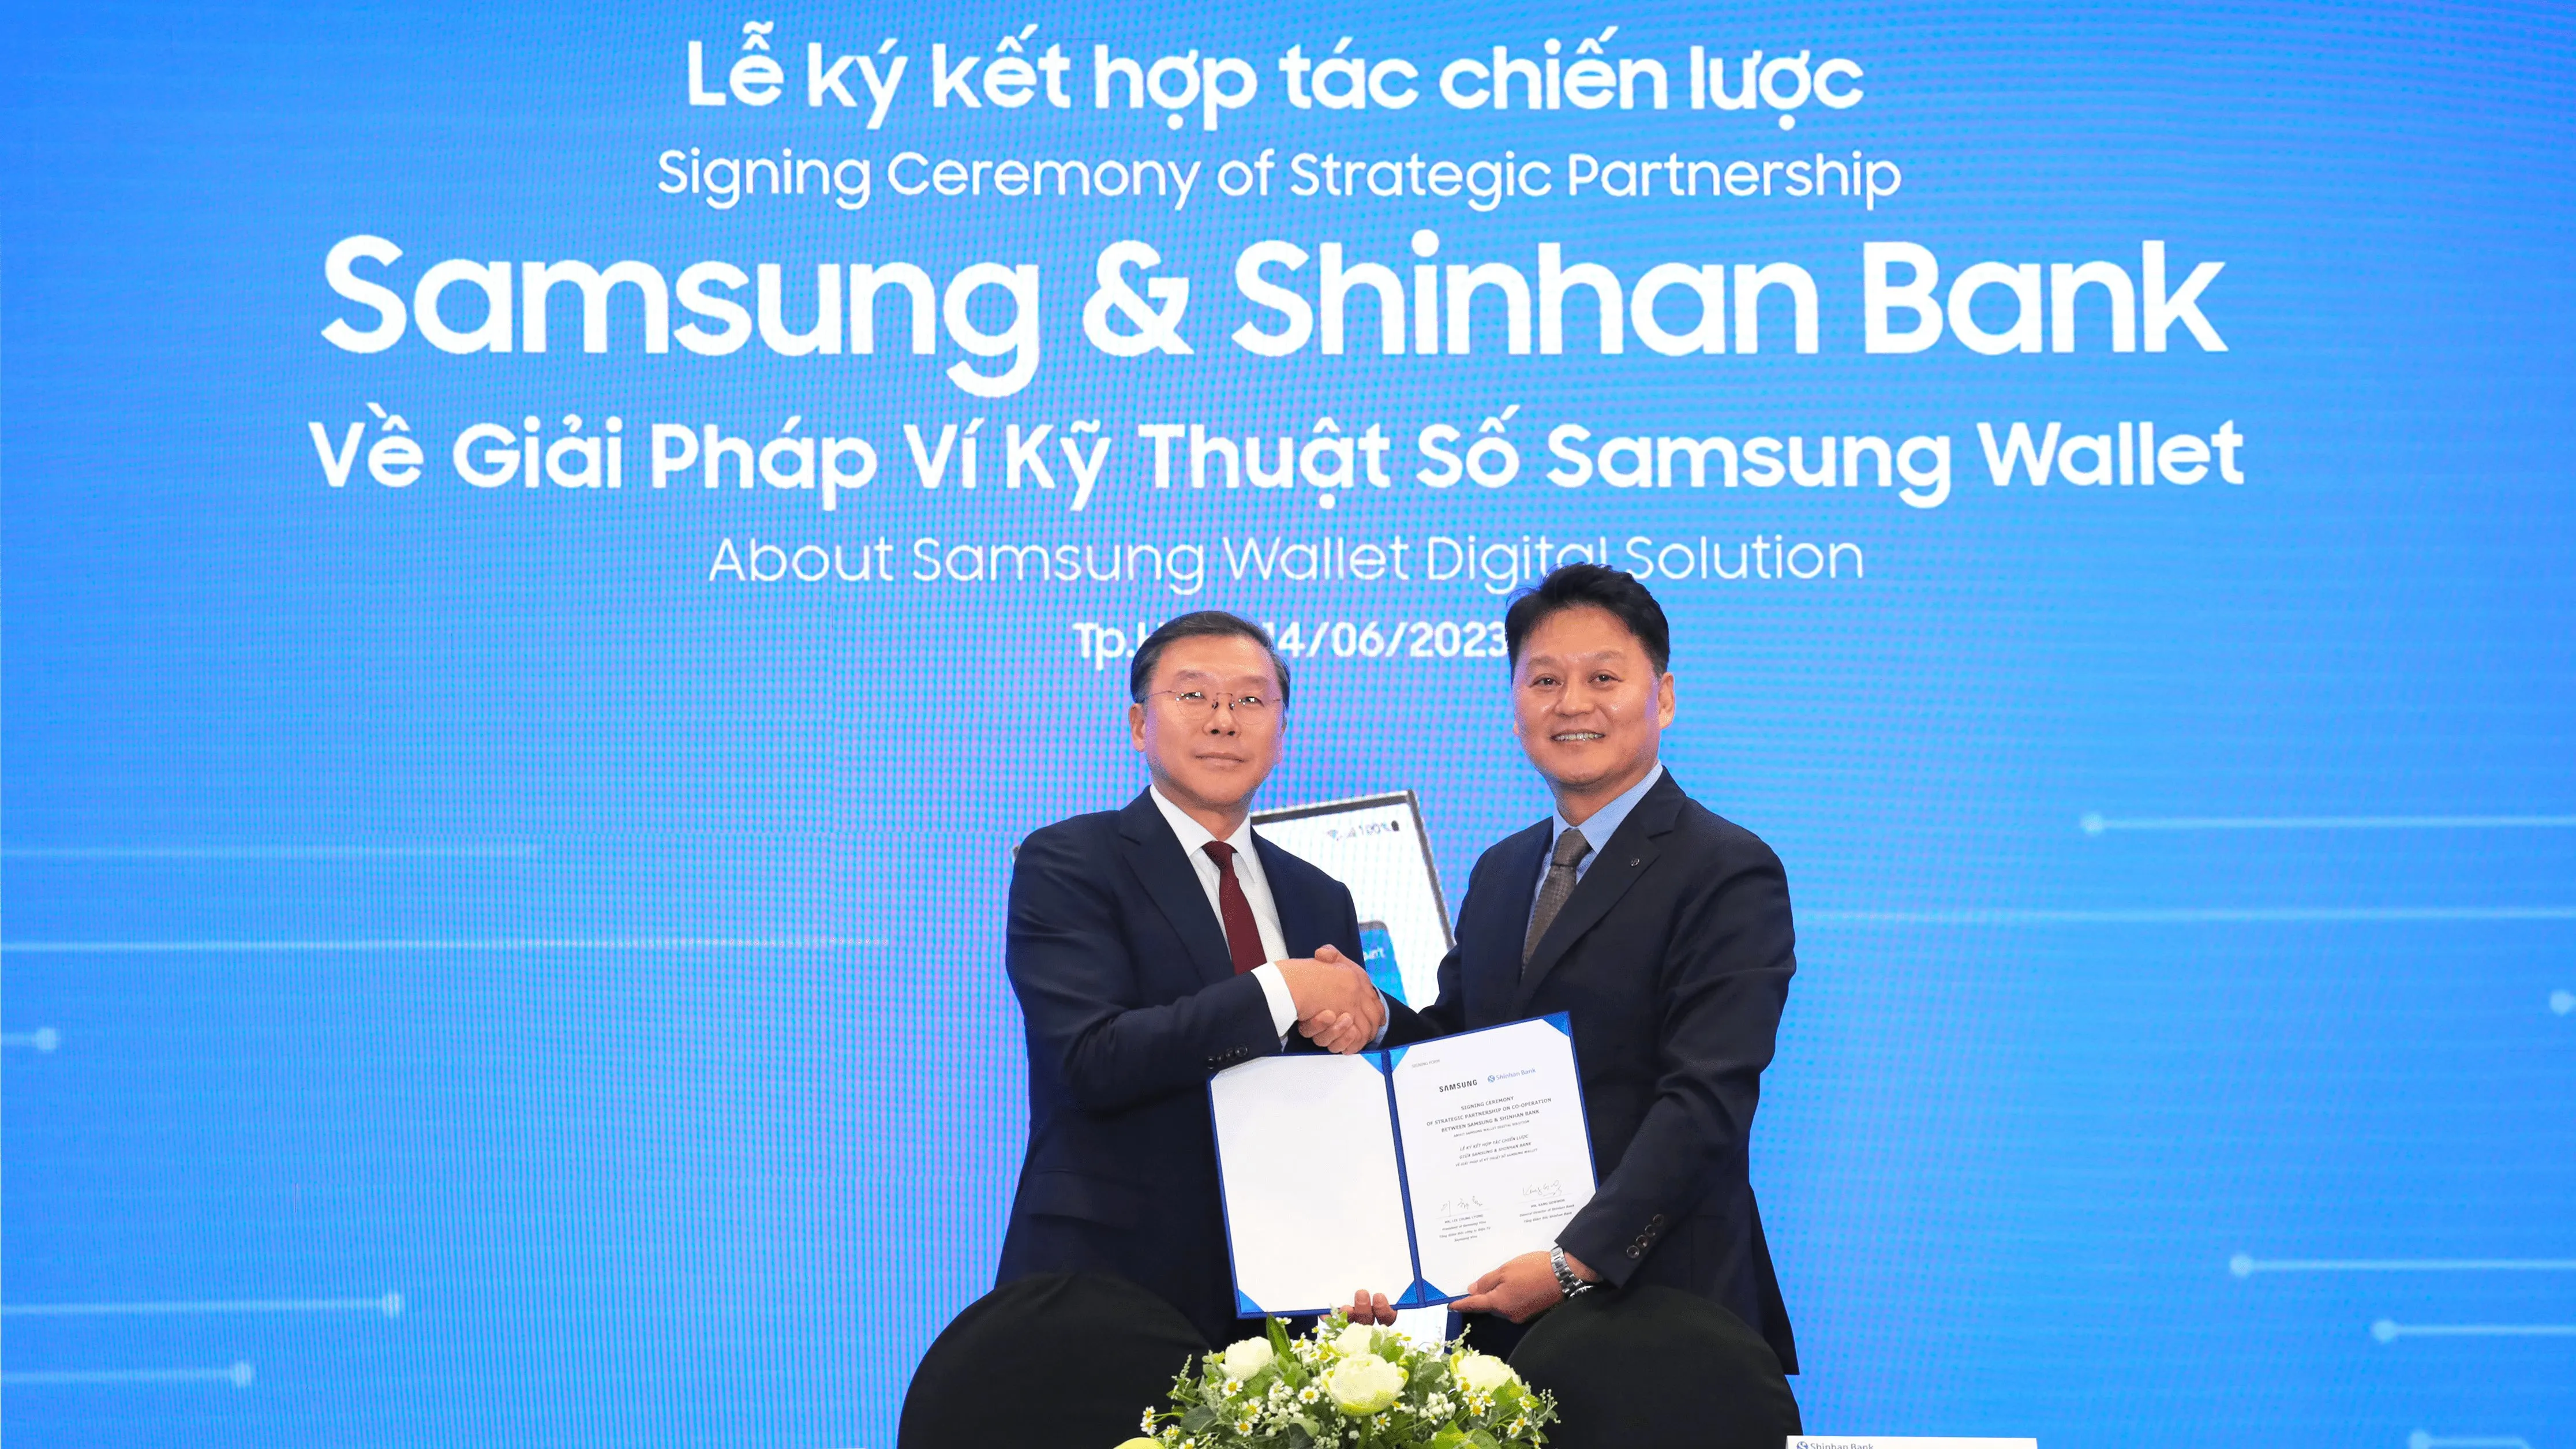 Mang giải pháp Ví Kỹ thuật số Samsung Wallet đến với người dùng Việt